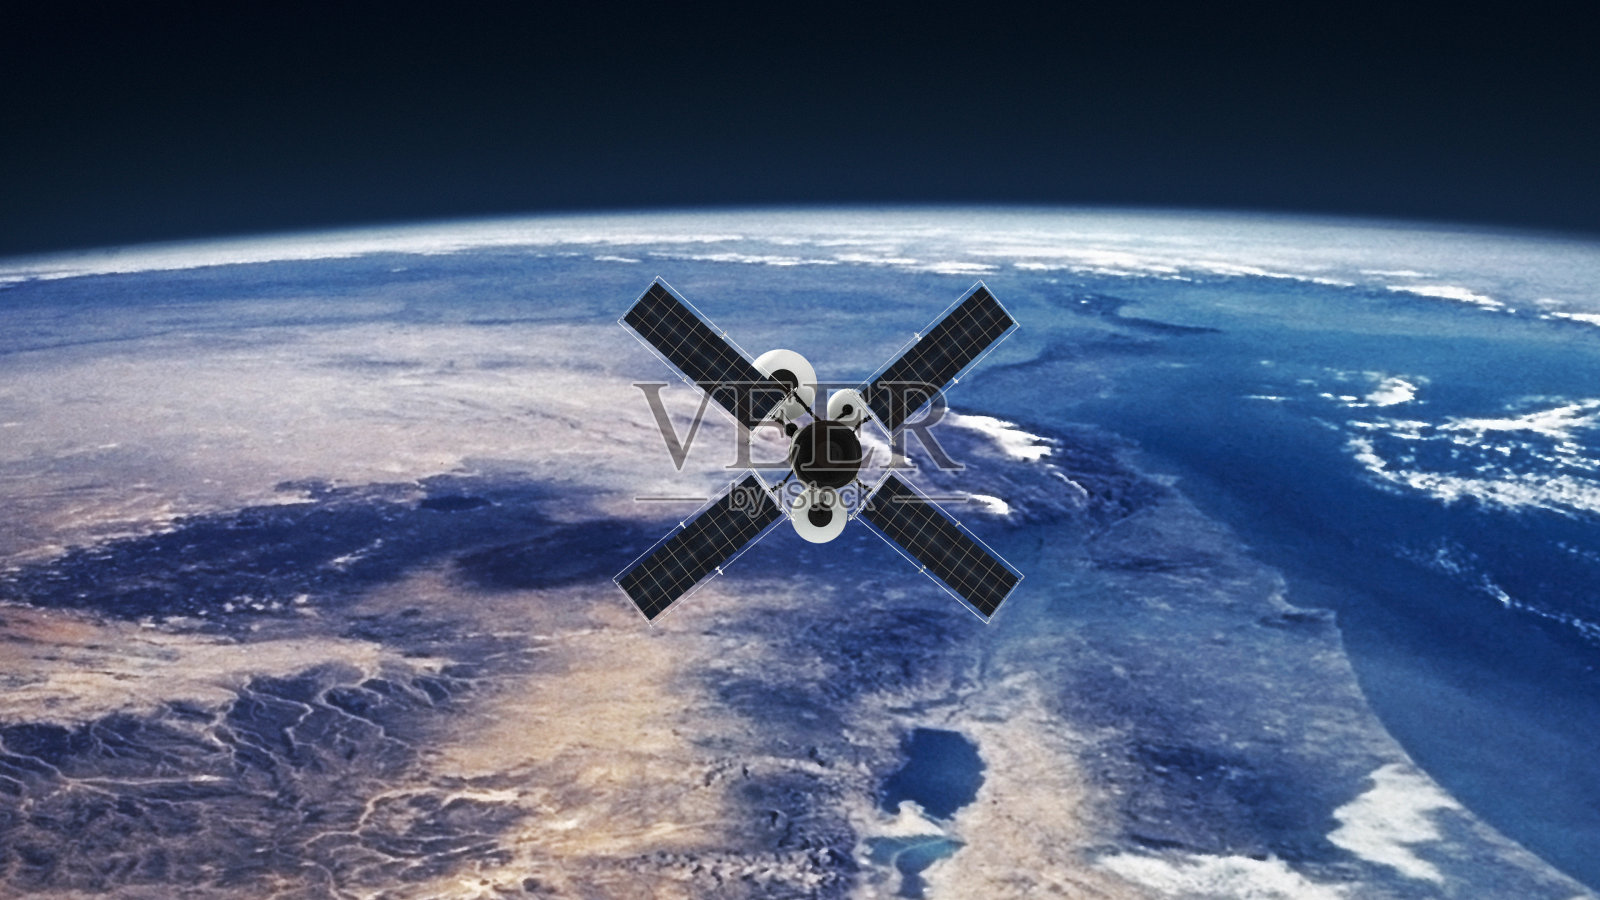 间谍卫星绕地球运行。NASA公共领域图像照片摄影图片